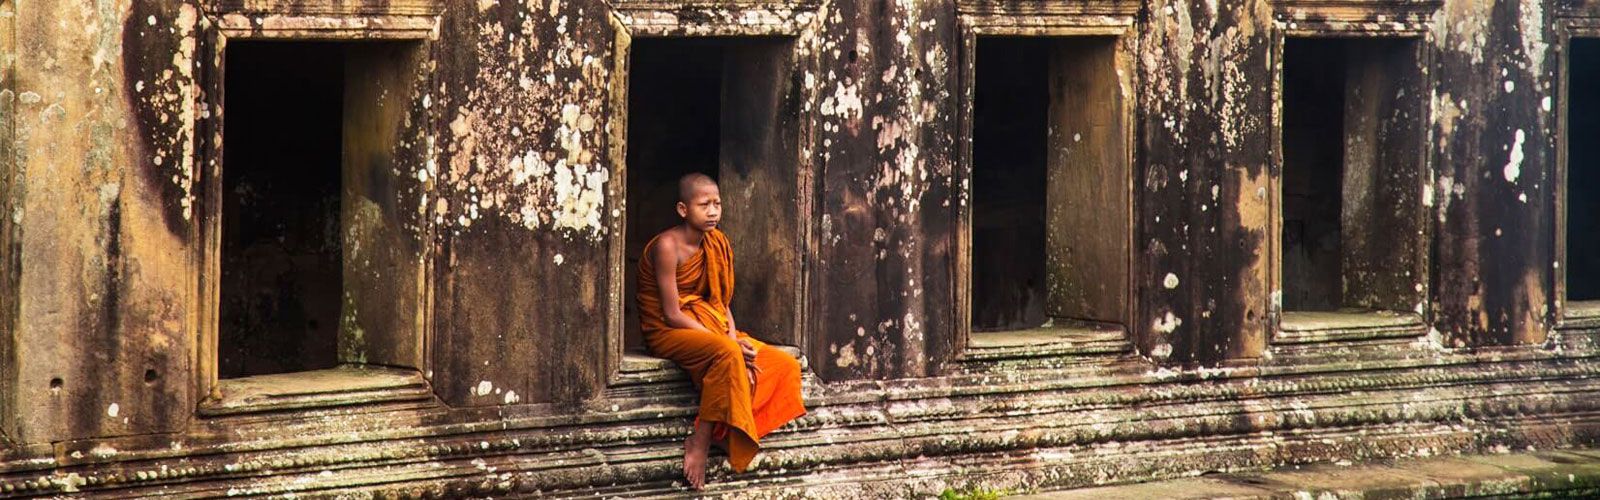 Preah Vihear Travel Guide | Asianventure Tours